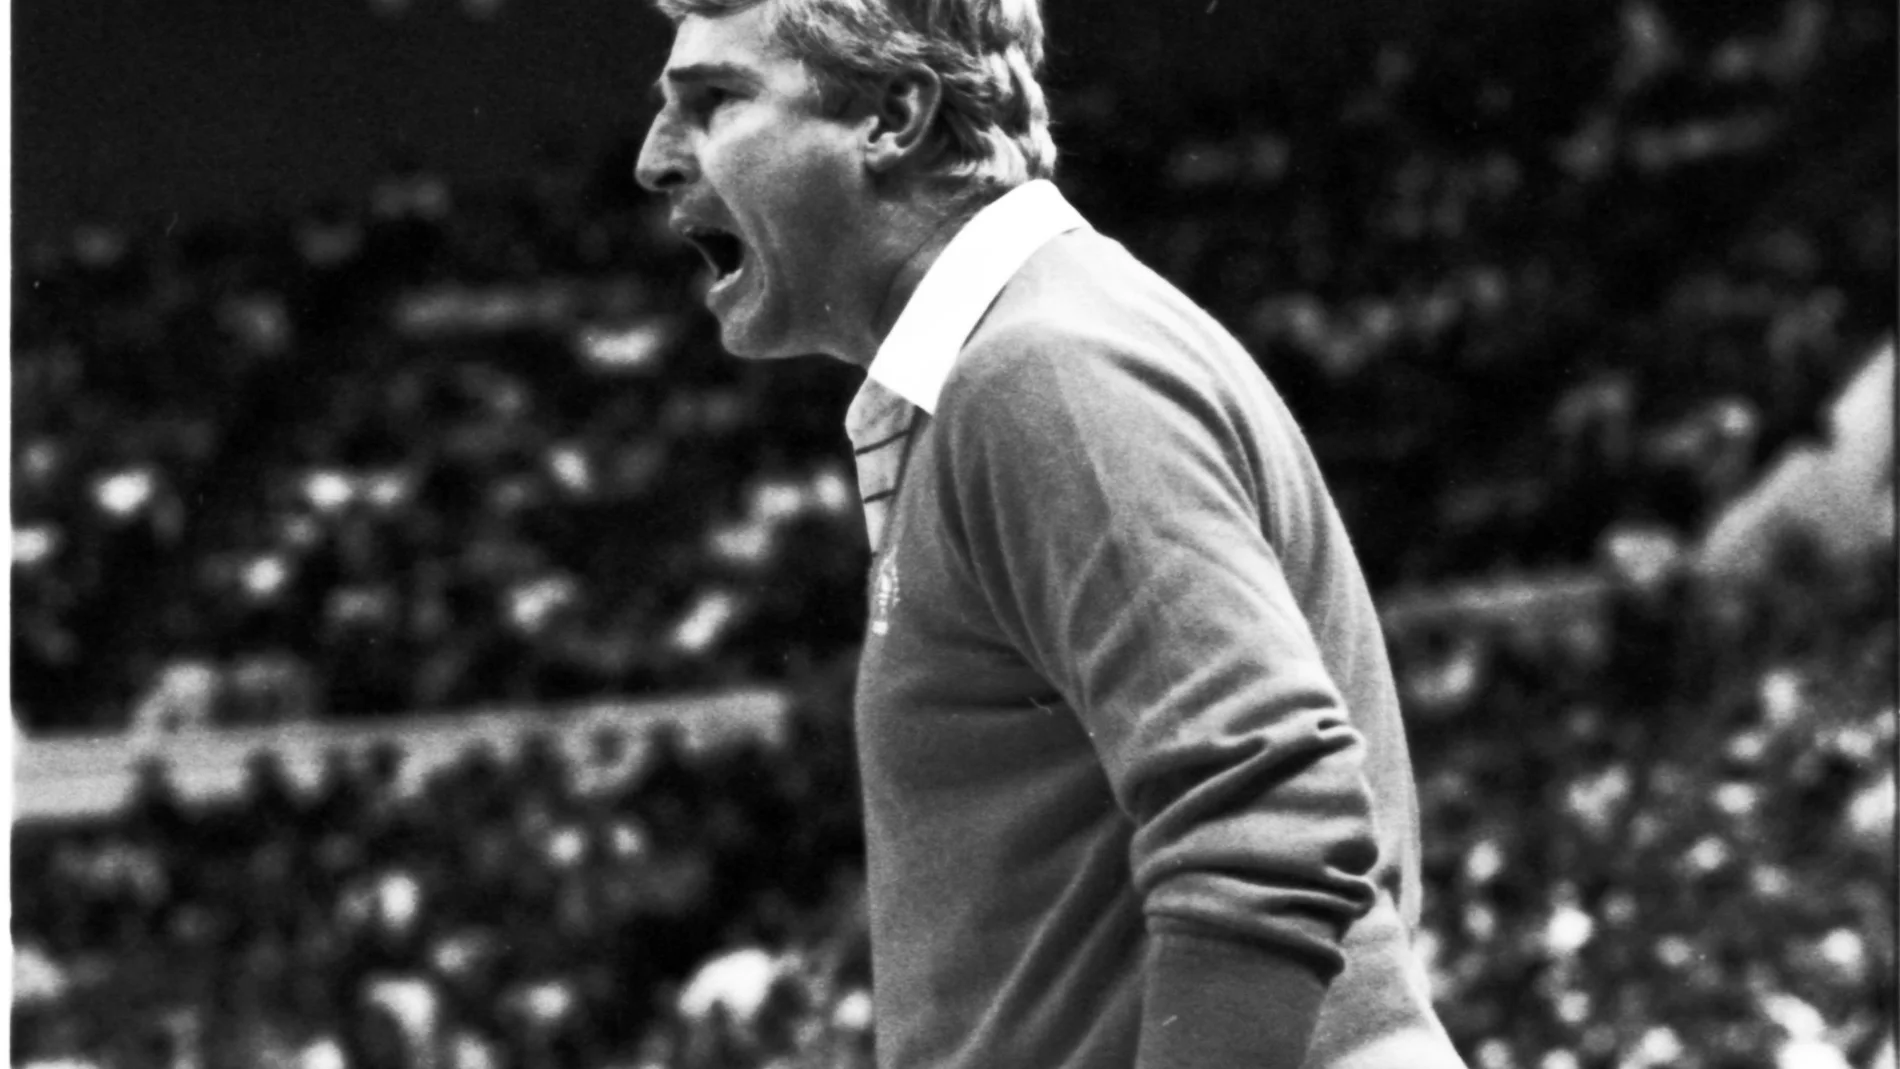 Bobby Knight, mítico entrenador estadounidense de baloncesto ha fallecido con 83 años